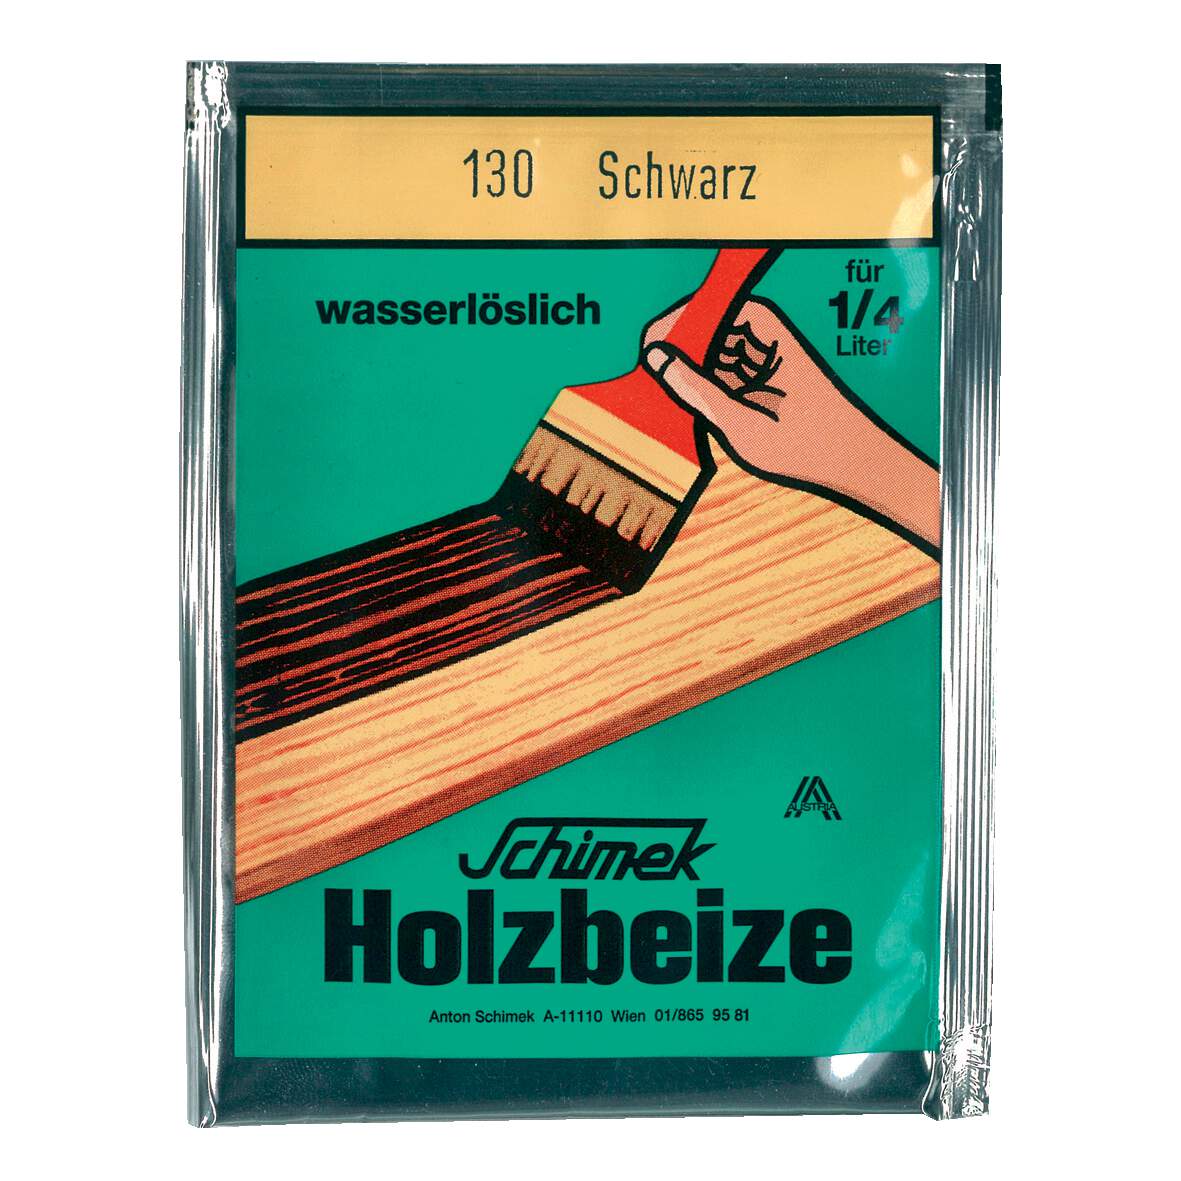 1216627 - Holzbeize wasserlöslich